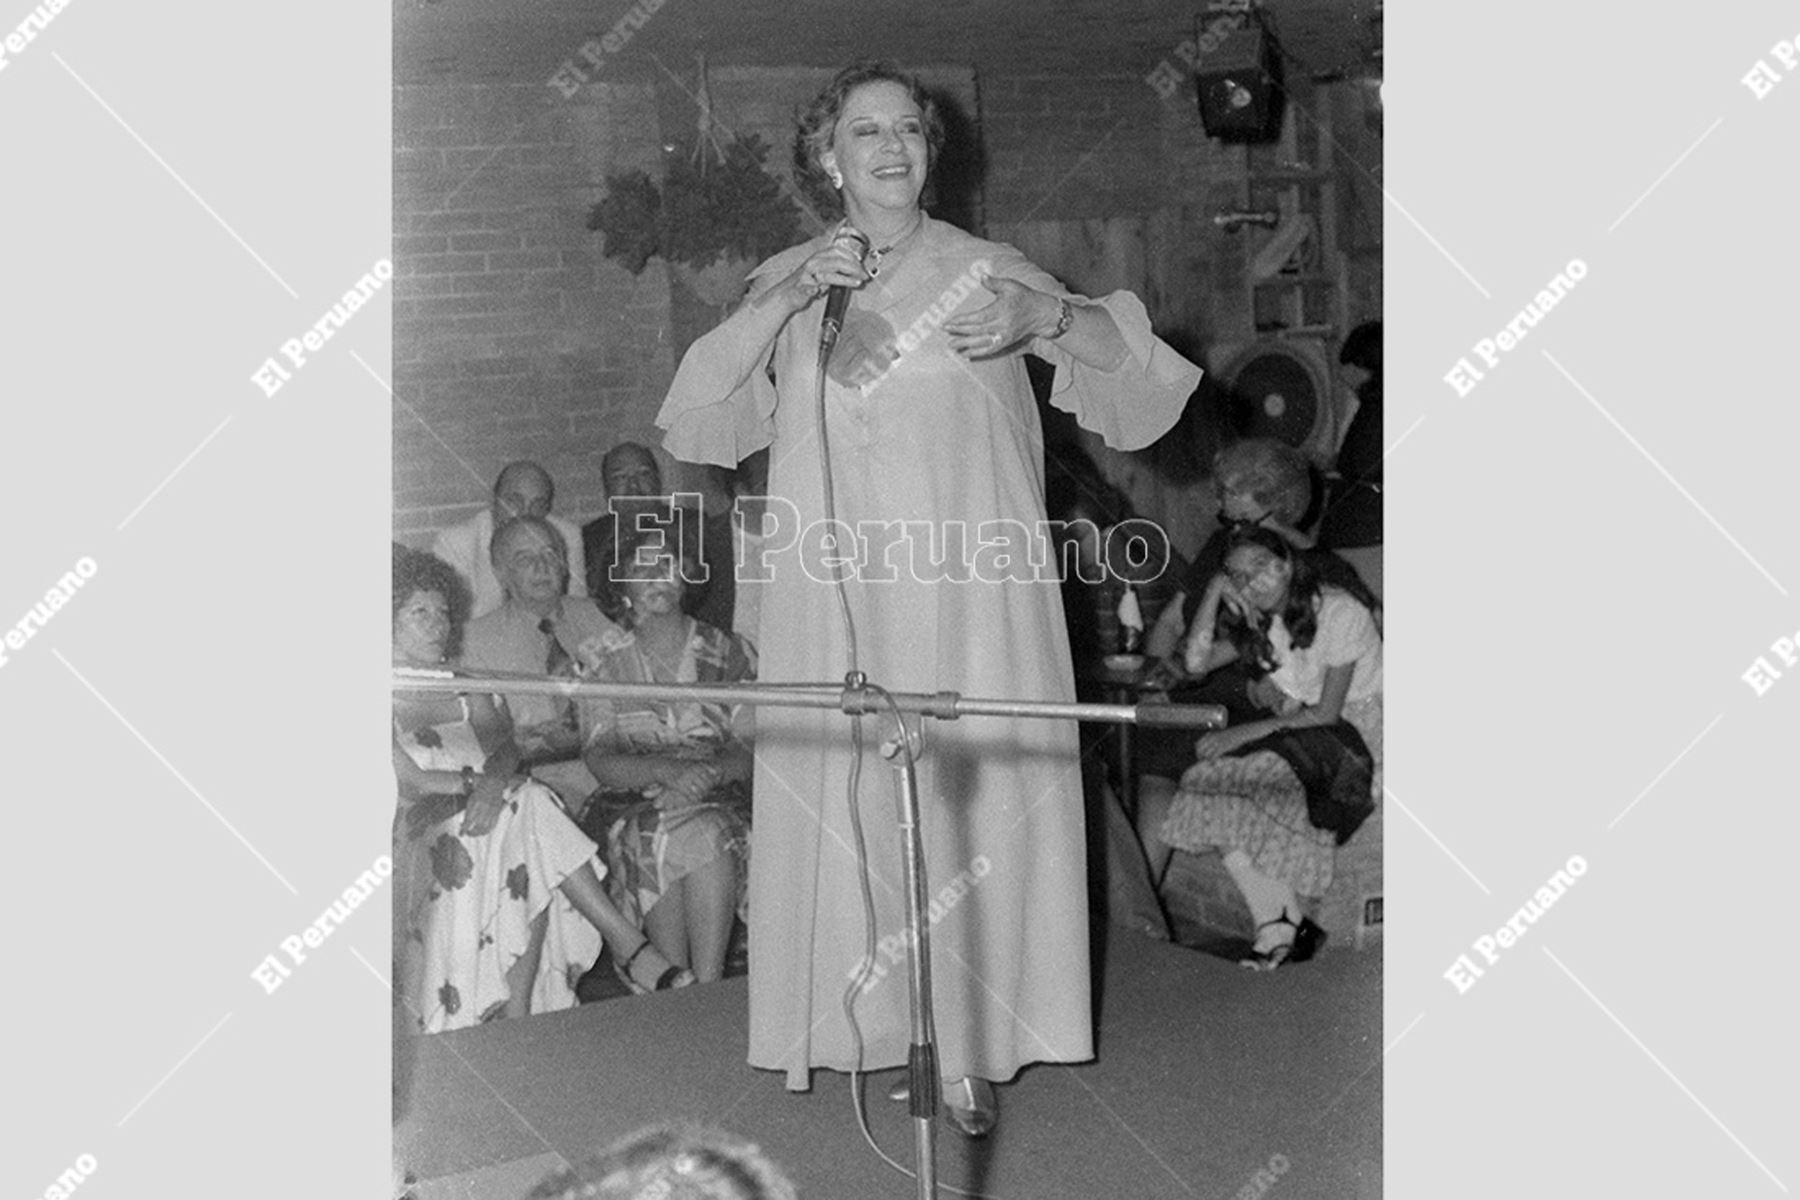 Lima - 14 diciembre 1979. Cantautora  Chabuca Granda en una peña criolla. Foto: Archivo Histórico de El Peruano / Virgilio Molero